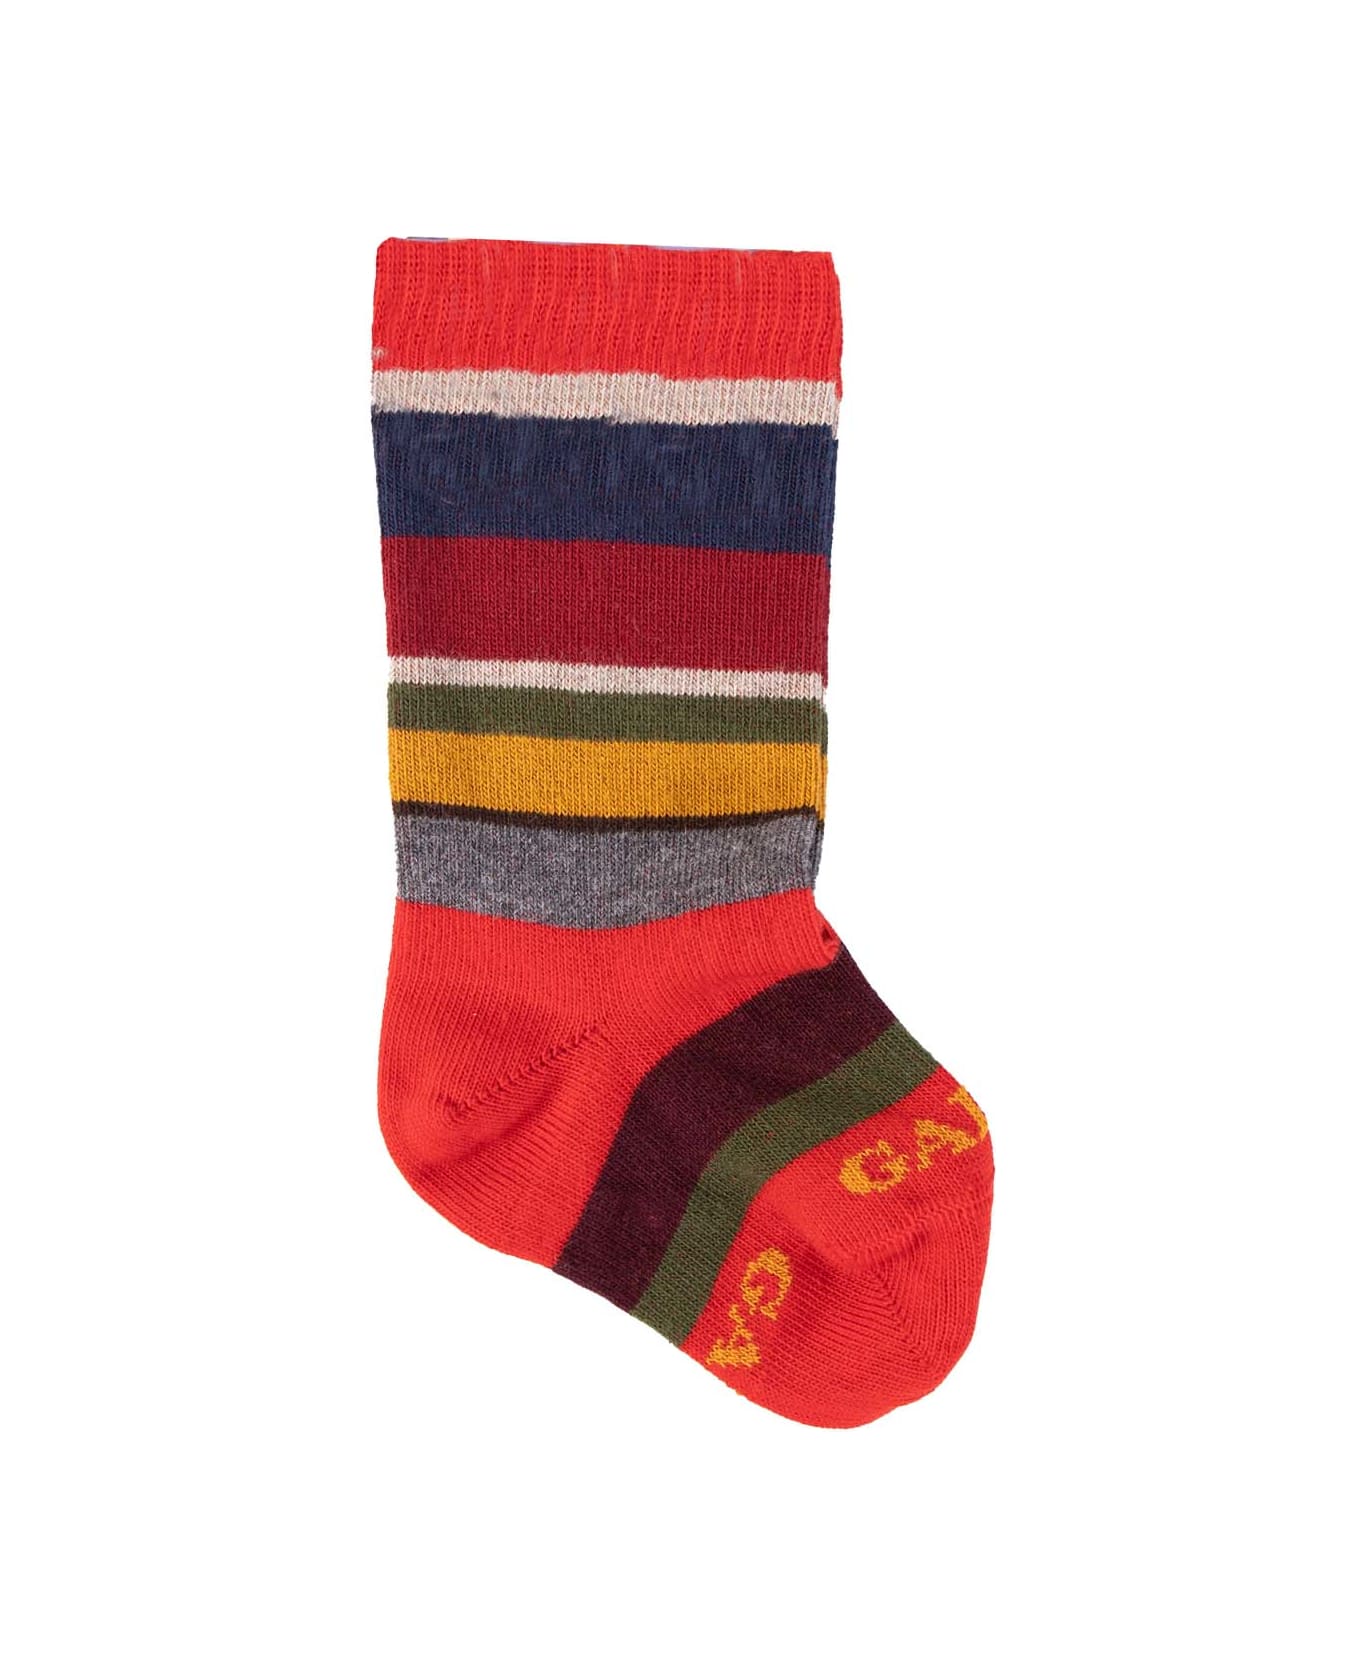 Gallo Cotton Socks - Red